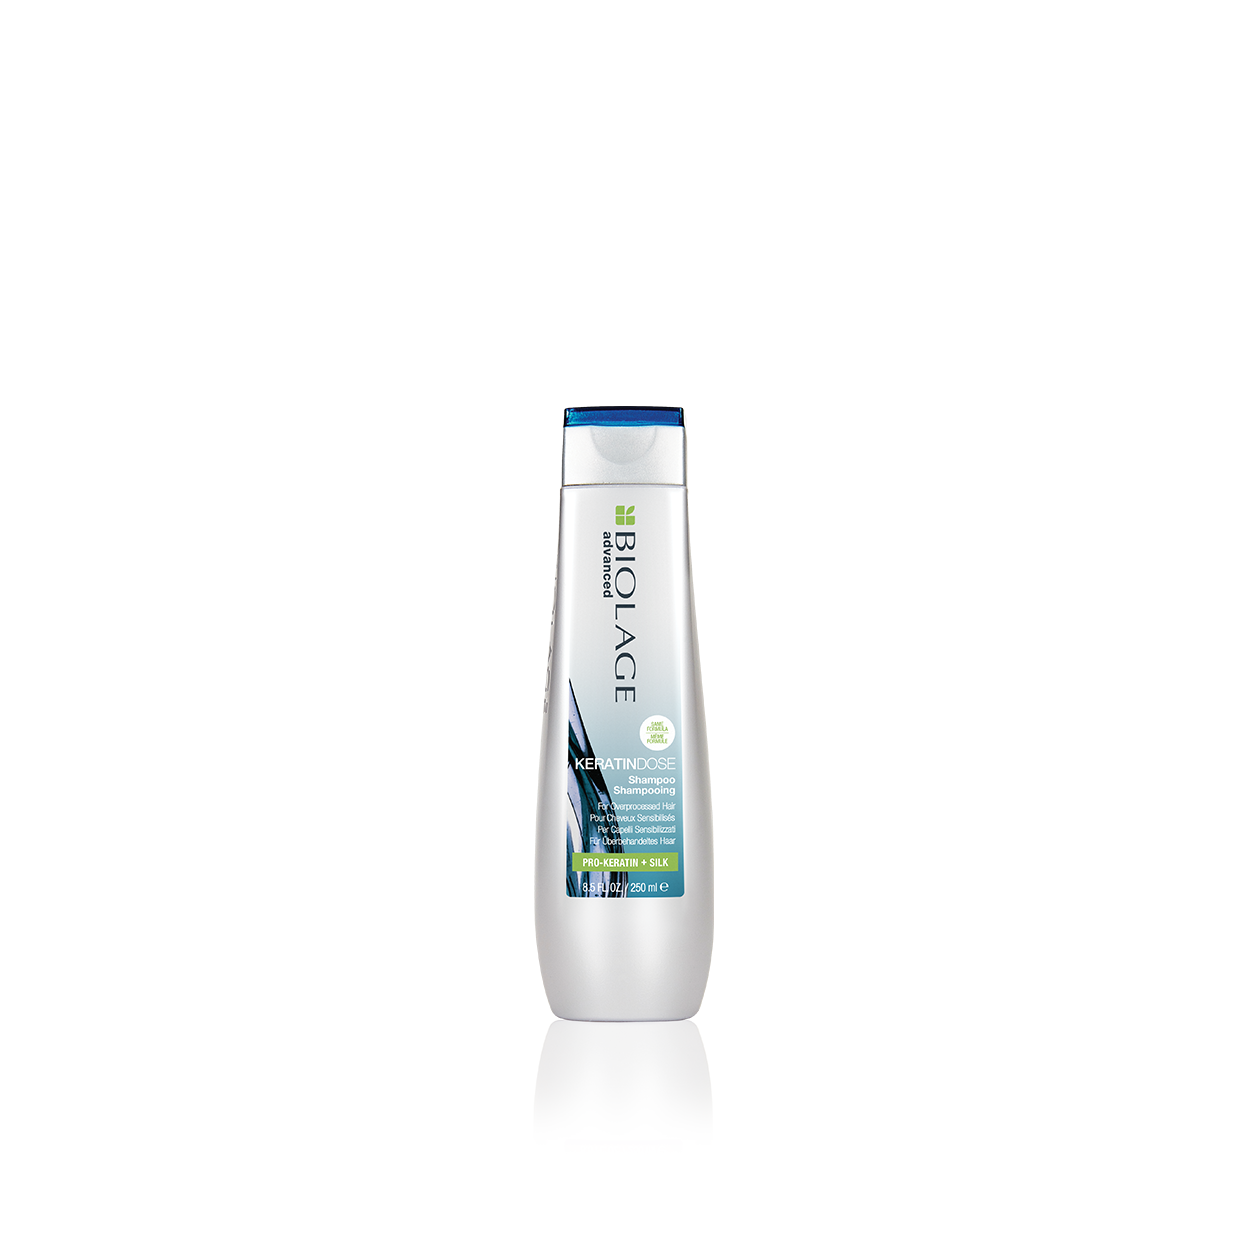 Biolage Advanced KeratinDose Damage Care Shampoo Nourishing Shampoo for Damaged Hair